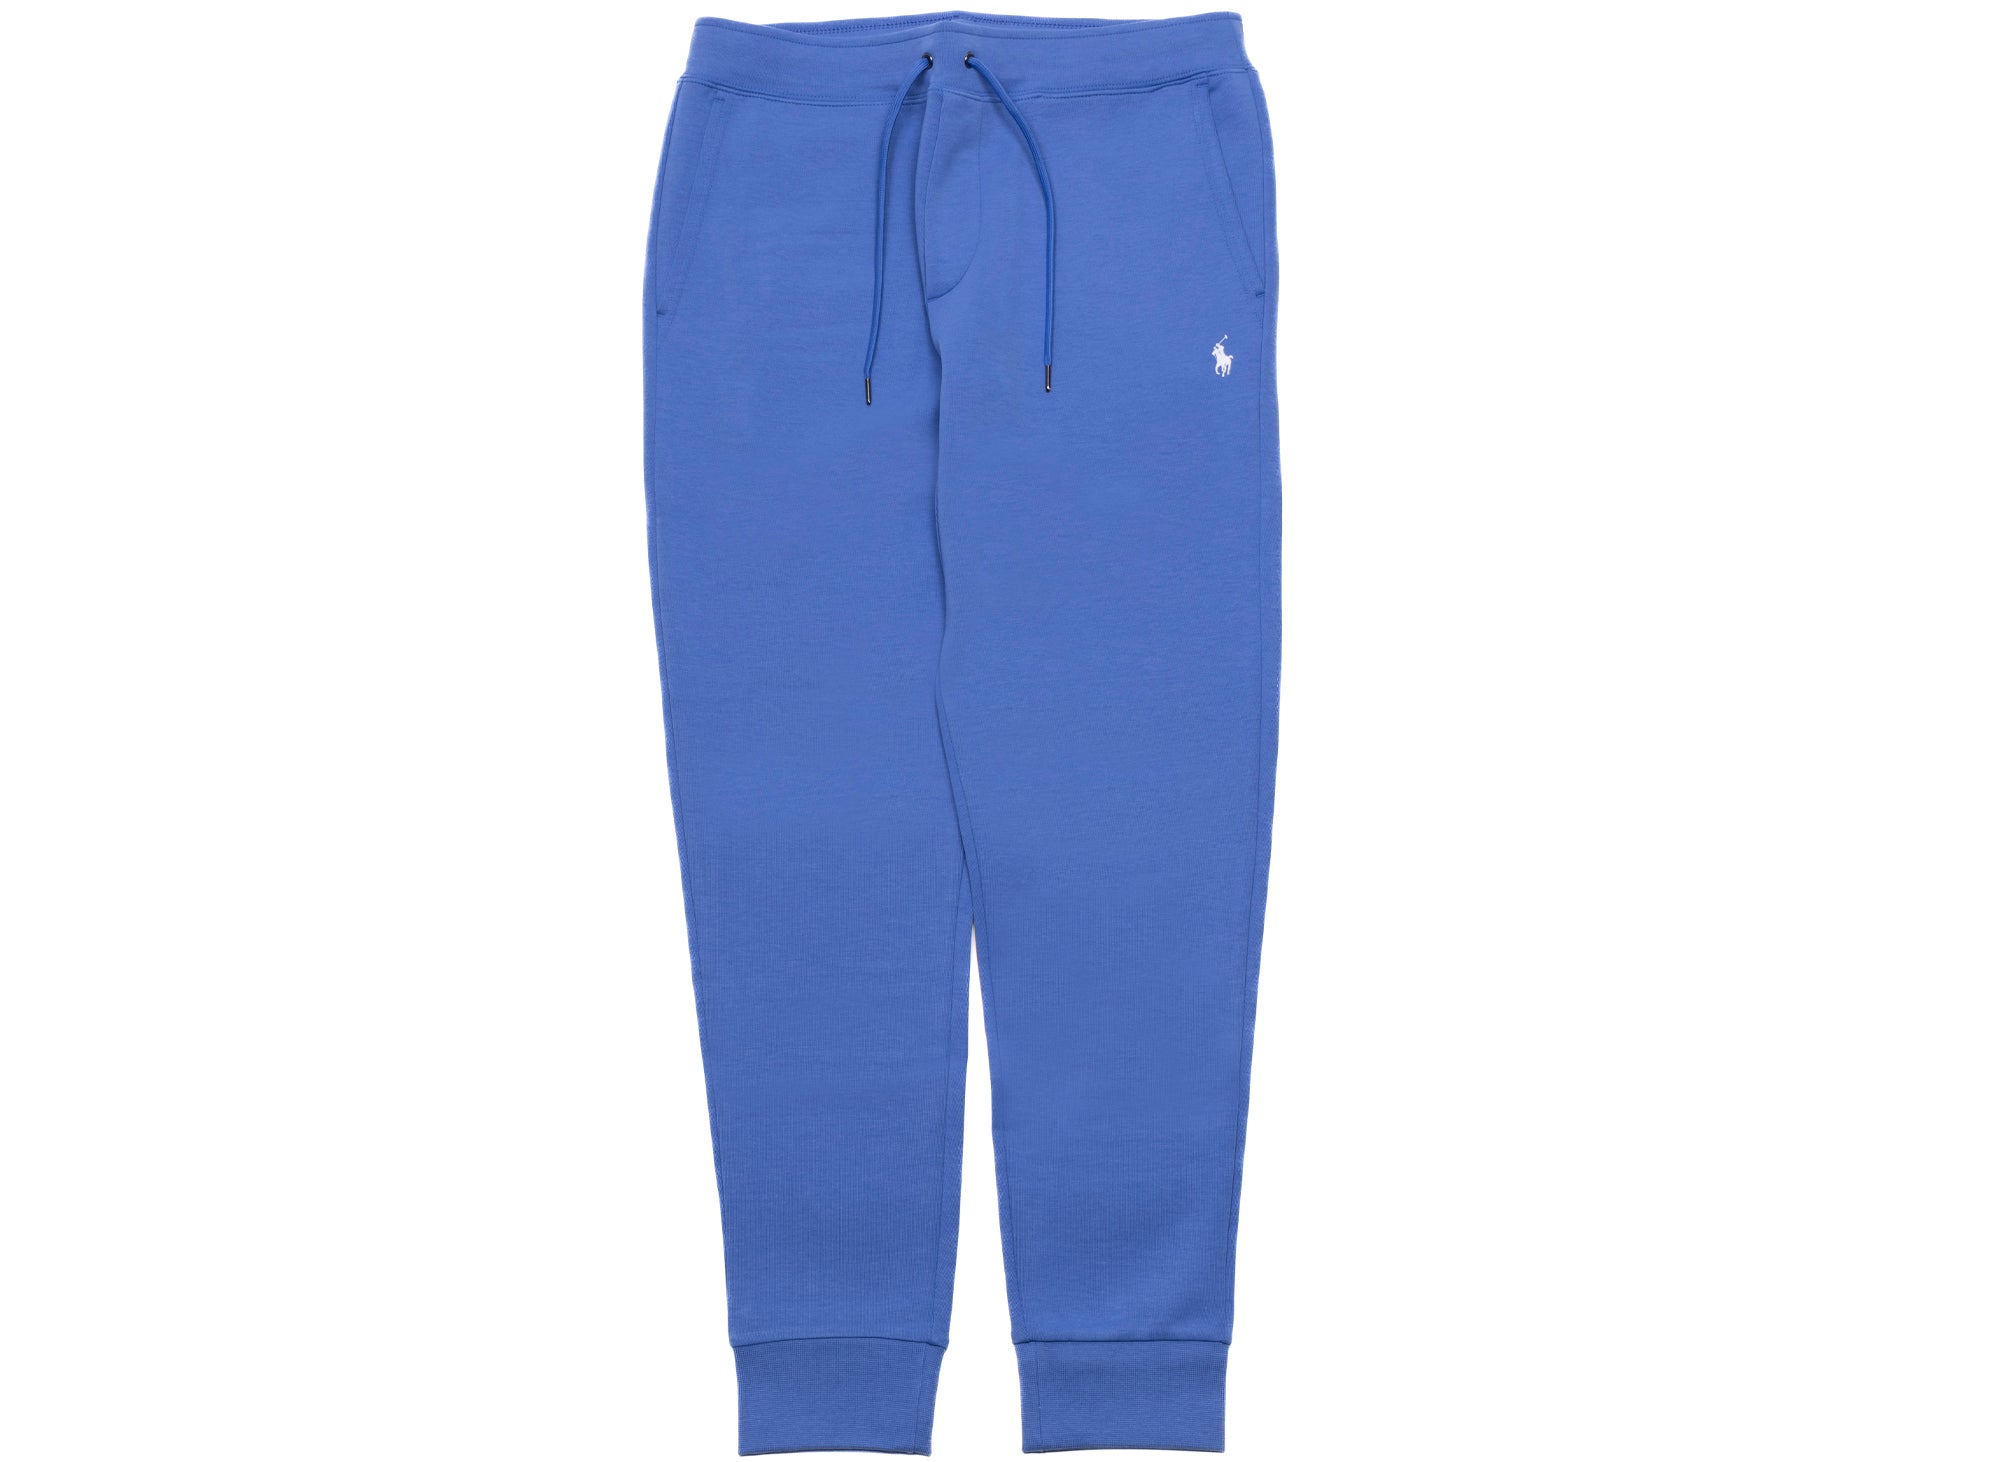 Shop Polo Ralph Lauren Cotton Fleece Athletic Pants Saks, 55% OFF